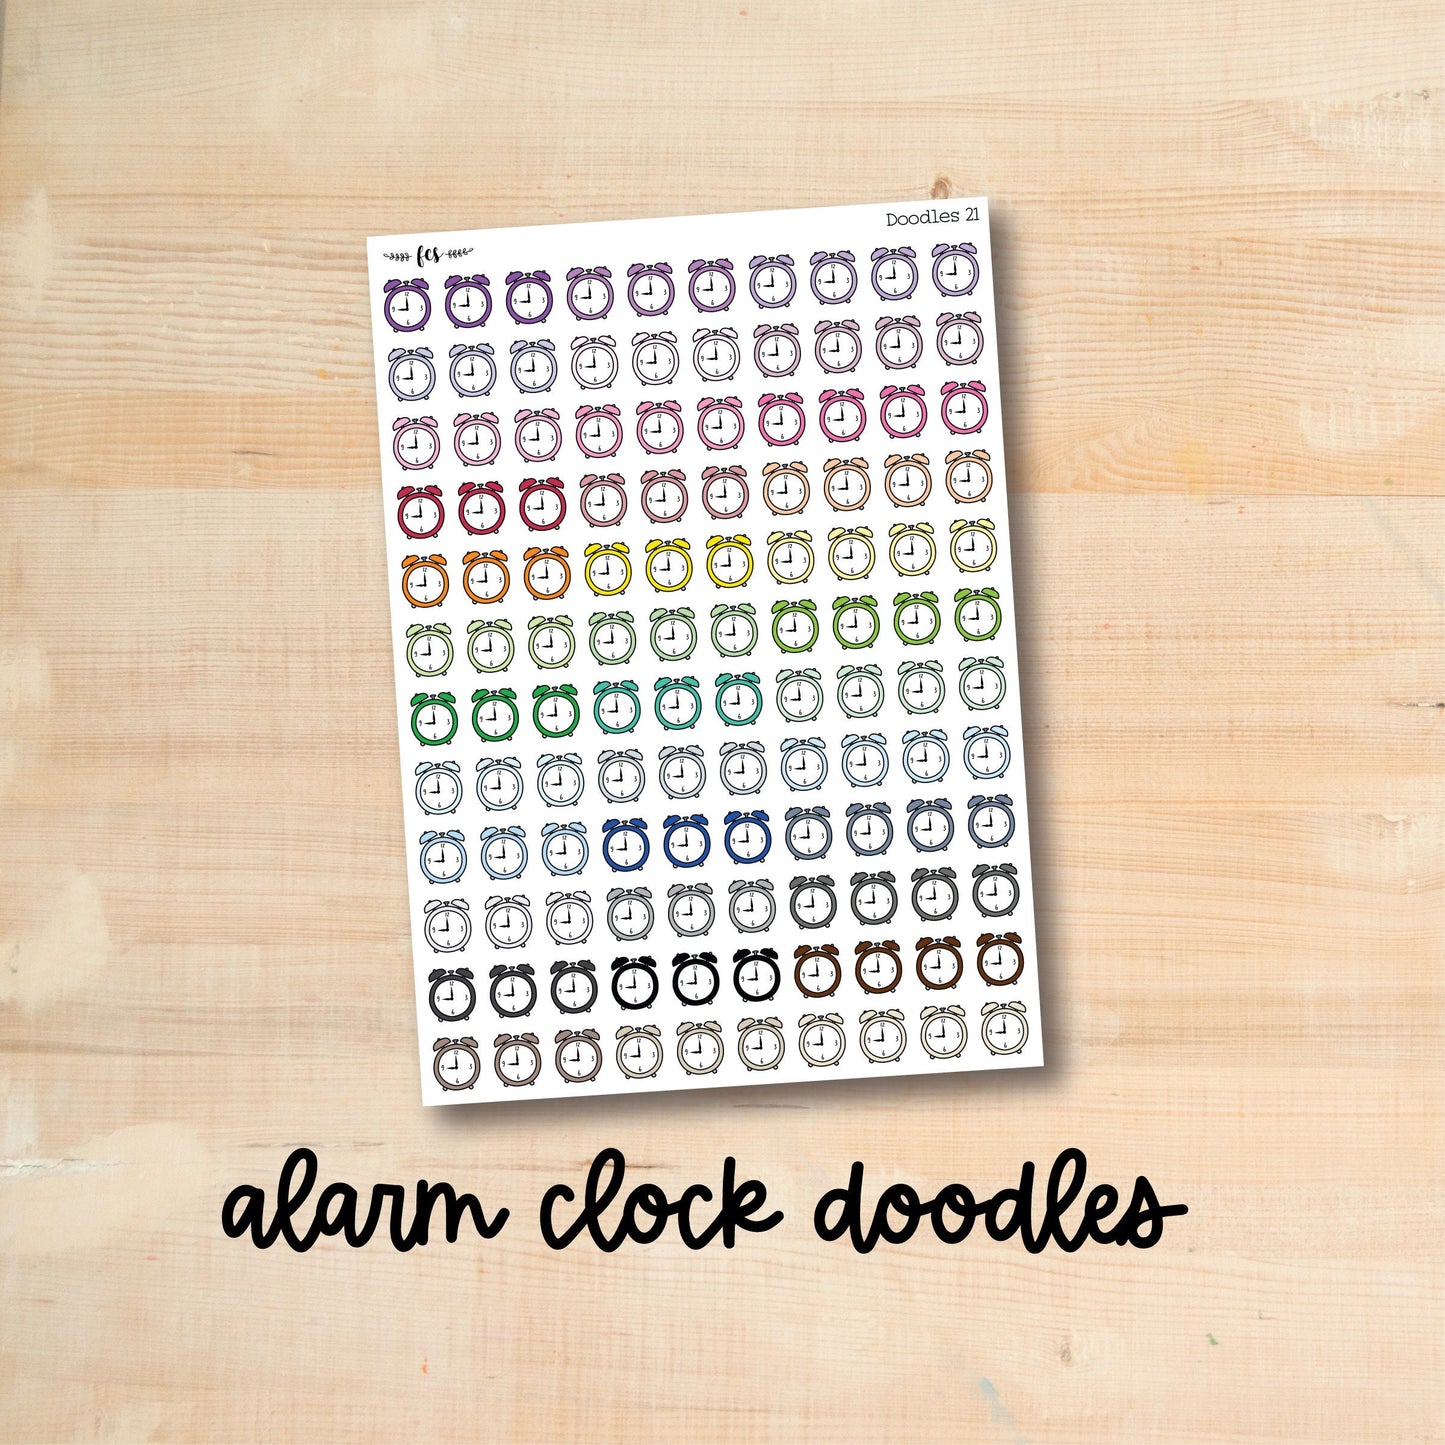 DOODLES-21 || ALARM CLOCK doodle planner stickers